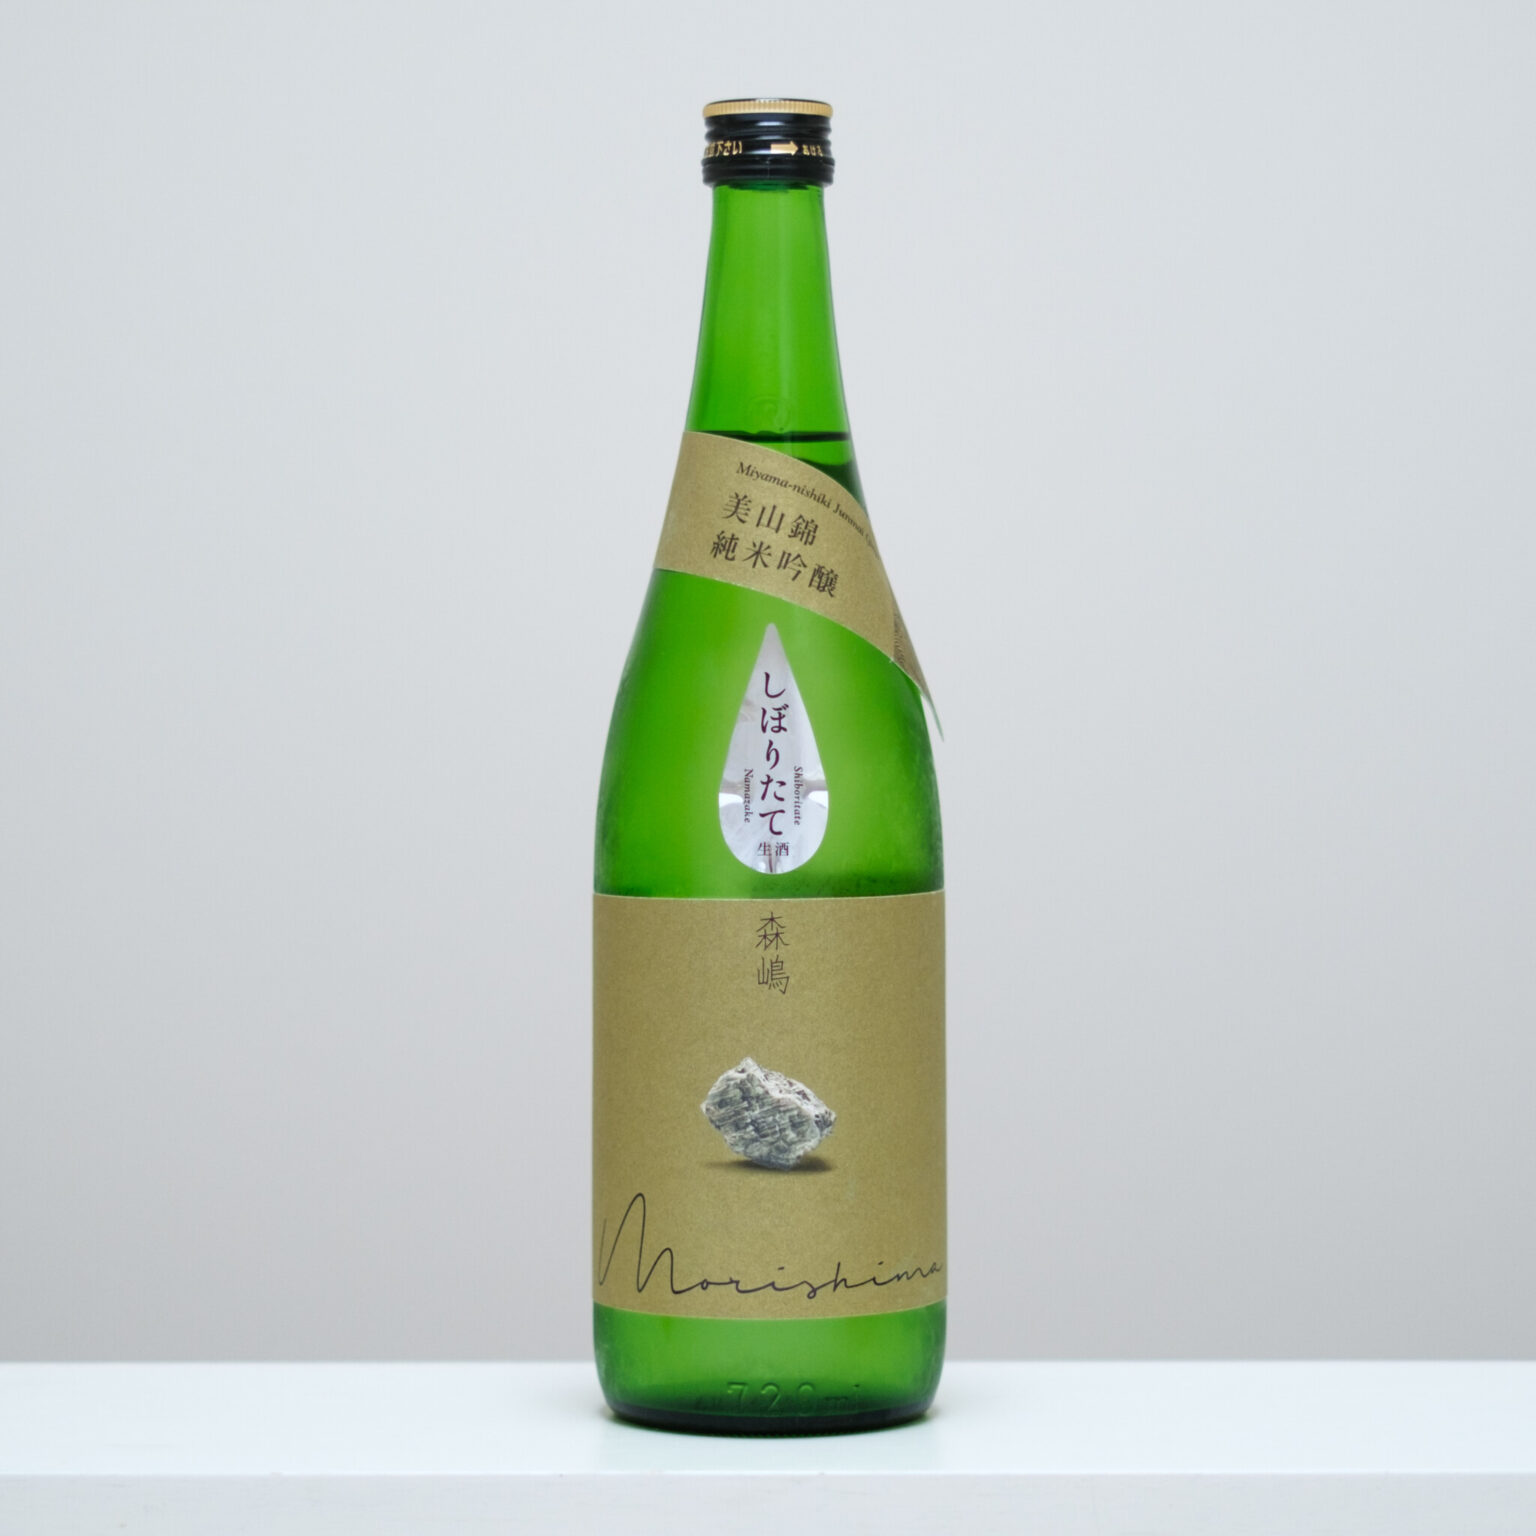 茨城県日立市にある老舗の酒蔵・森島酒造から、令和元年に登場した新銘柄「森嶋」。ラベルには震災で崩れてしまった蔵に使われていたという大谷石が描かれている。